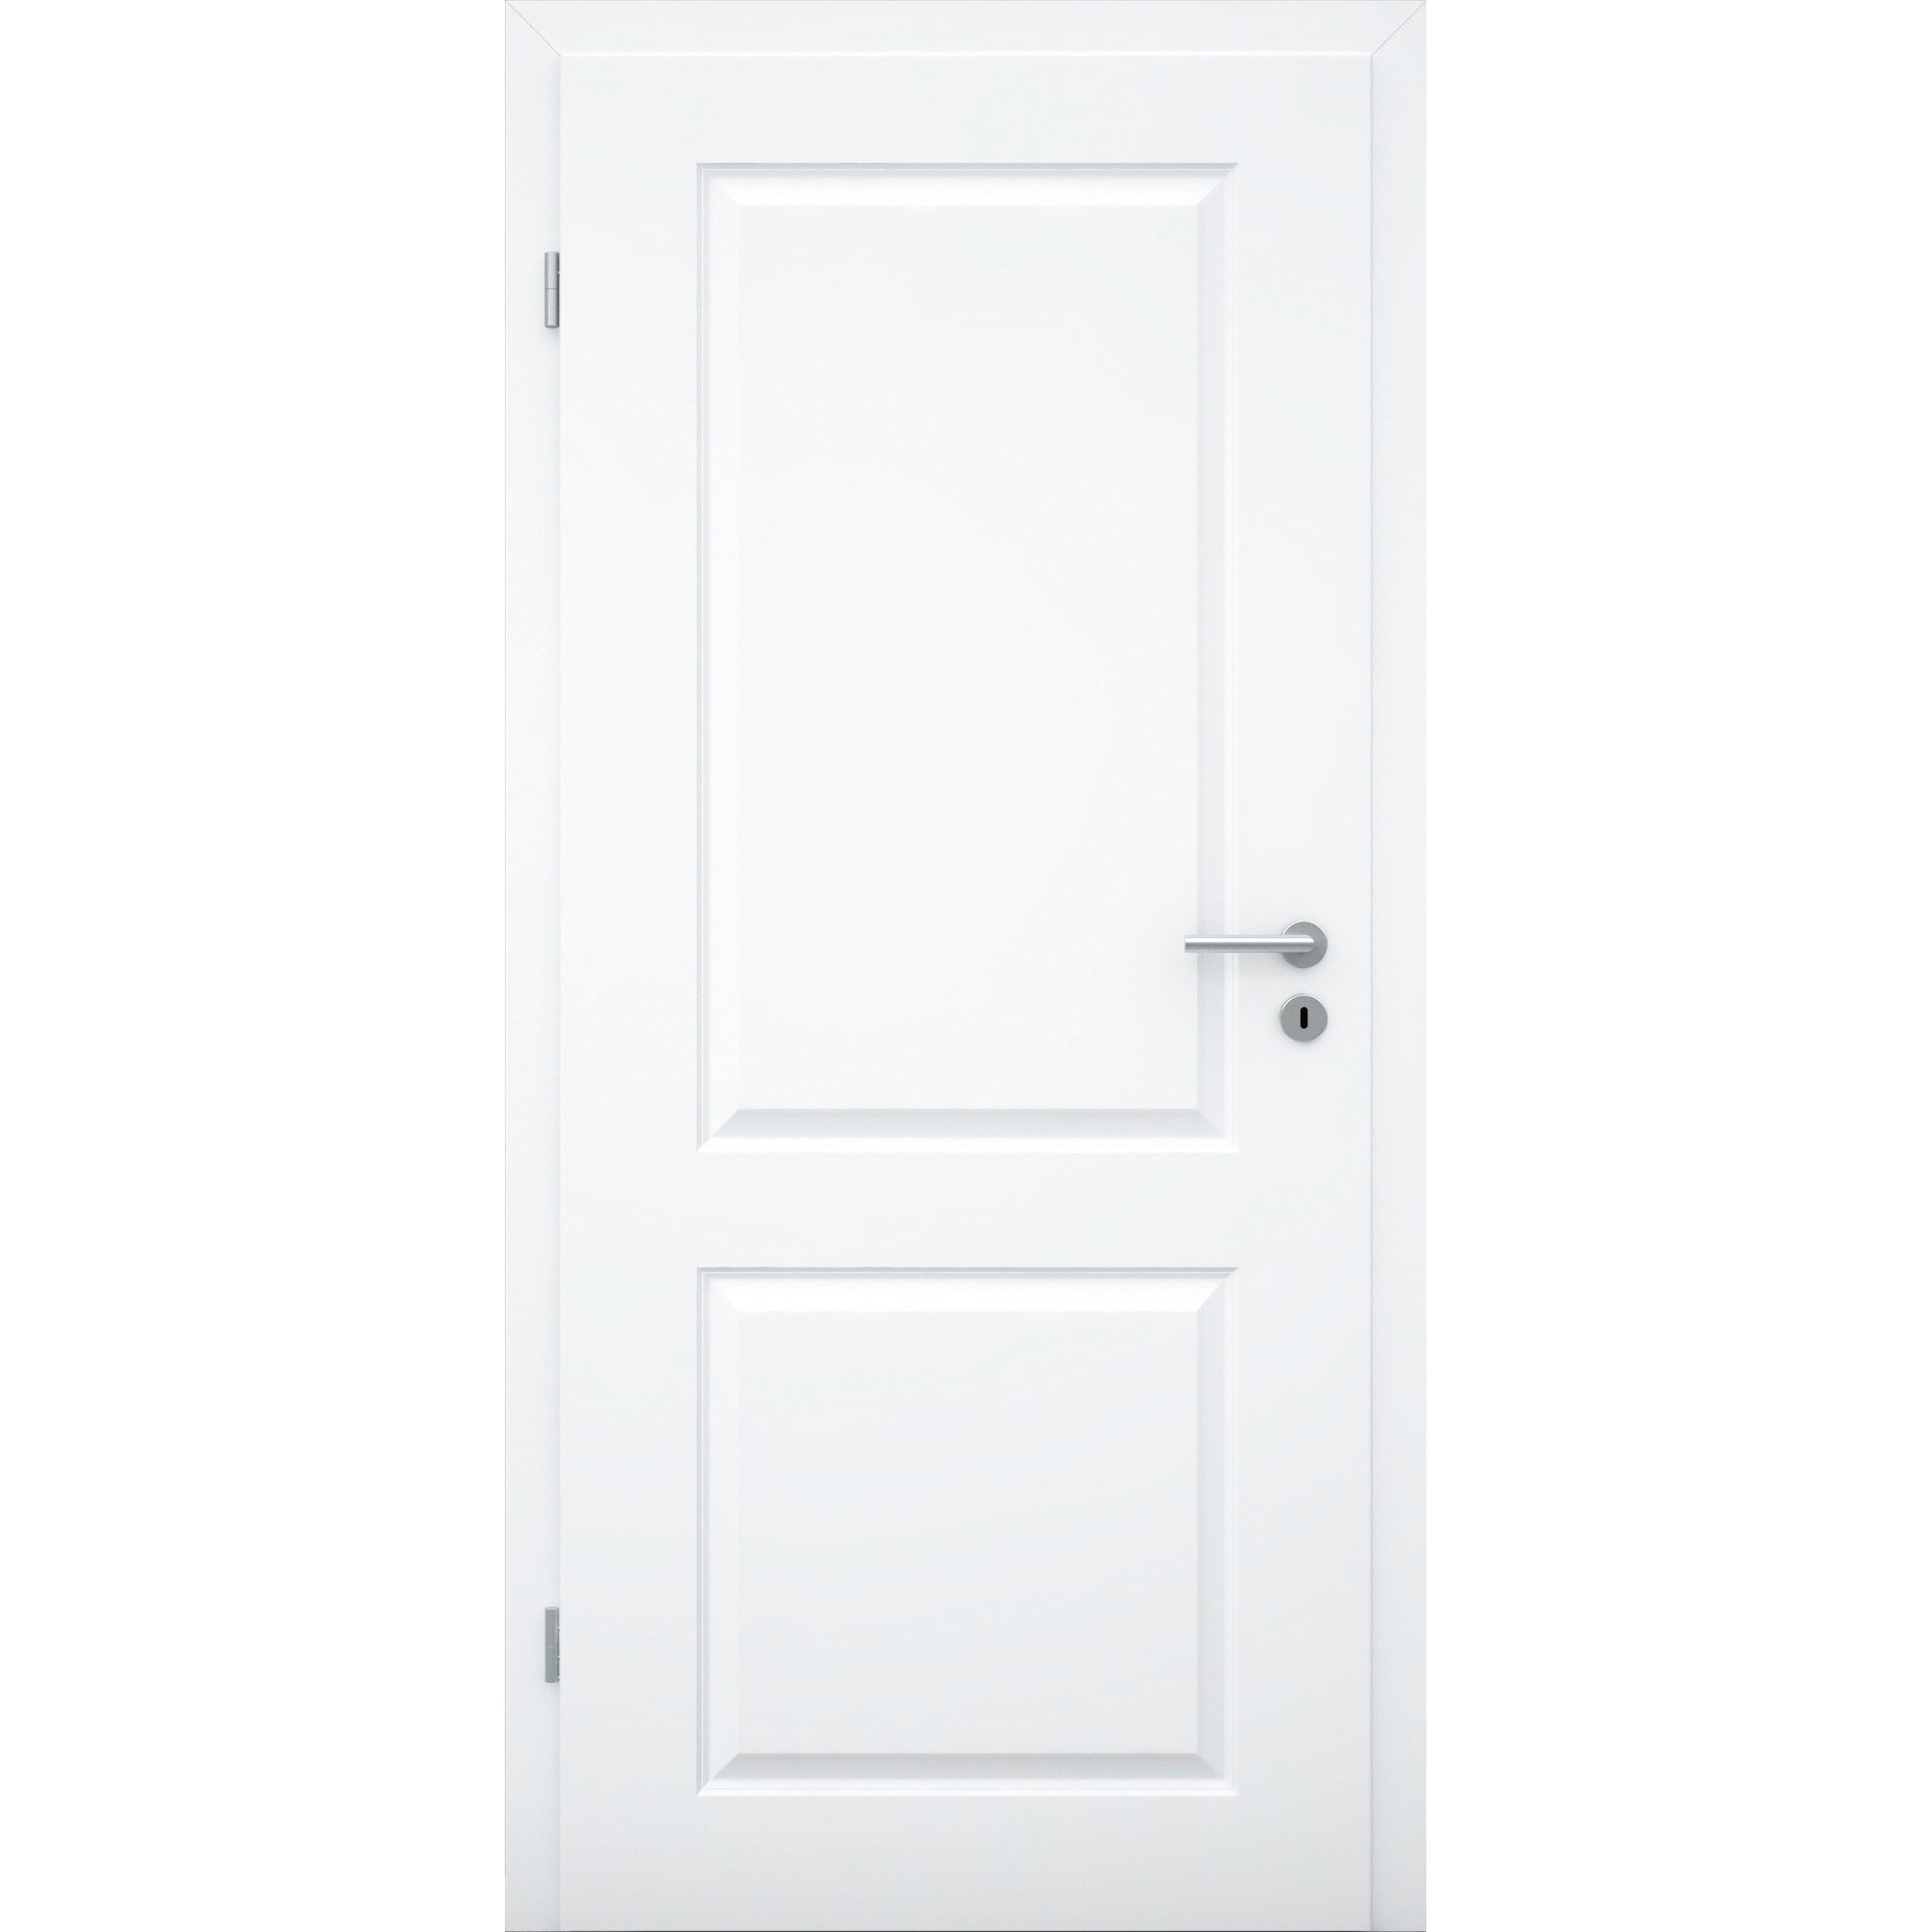 Zimmertür mit Zarge brillant-weiß 2 Kassetten Designkante - Modell Stiltür K23